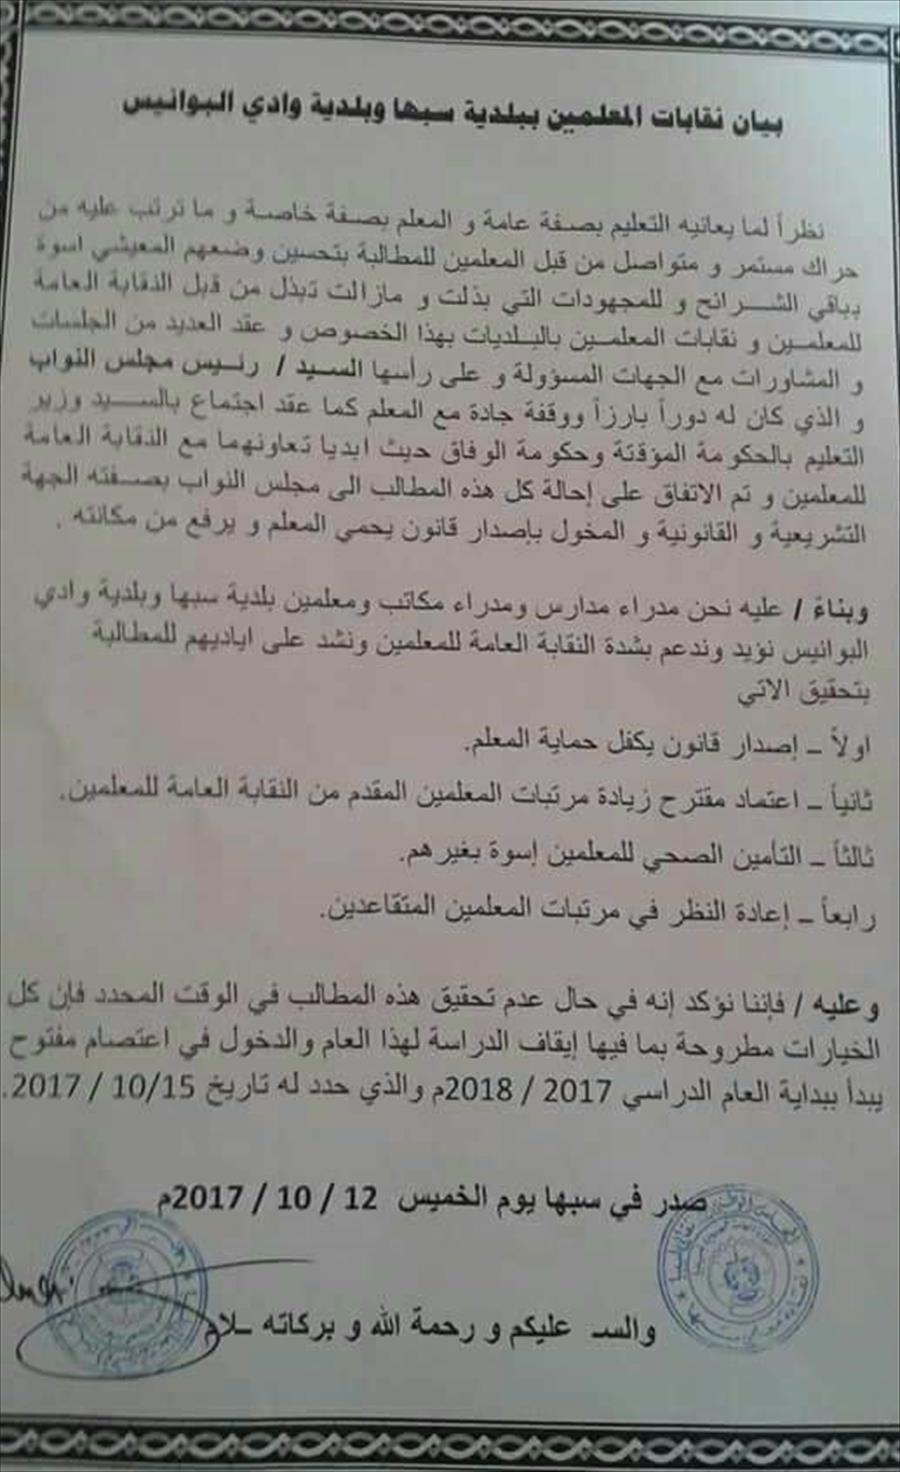 معلمو سبها والبوانيس يهددون بإيقاف الدراسة ويمهلون الحكومة 3 أيام لتحقيق مطالبهم